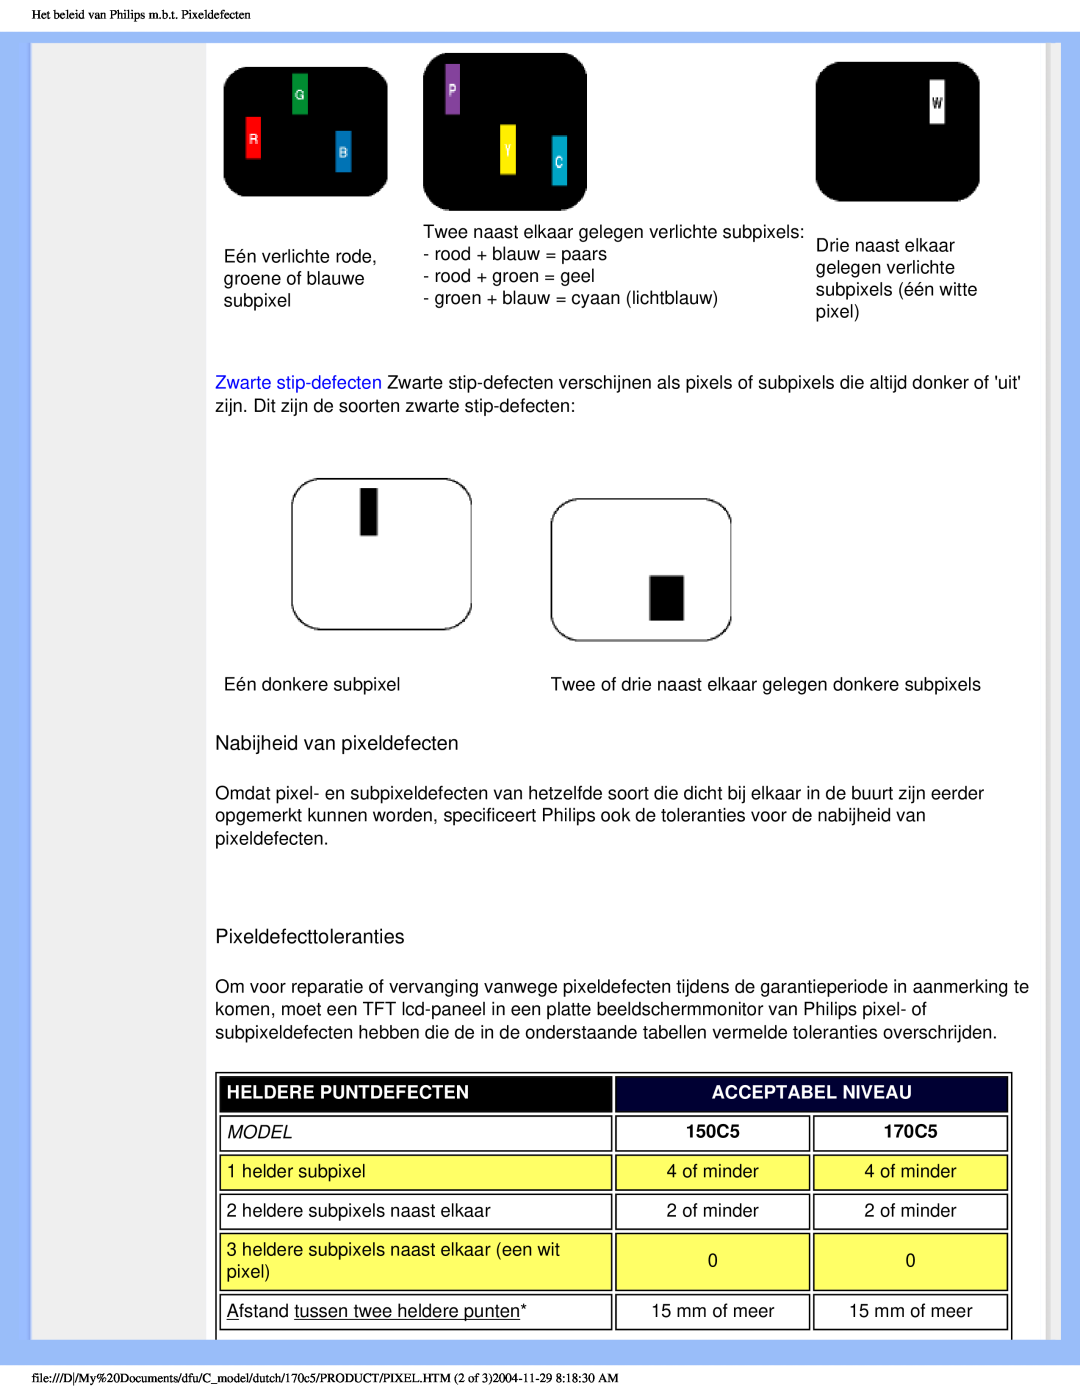 Philips 170C5 user manual Nabijheid van pixeldefecten, Pixeldefecttoleranties, Heldere Puntdefecten, Acceptabel Niveau 